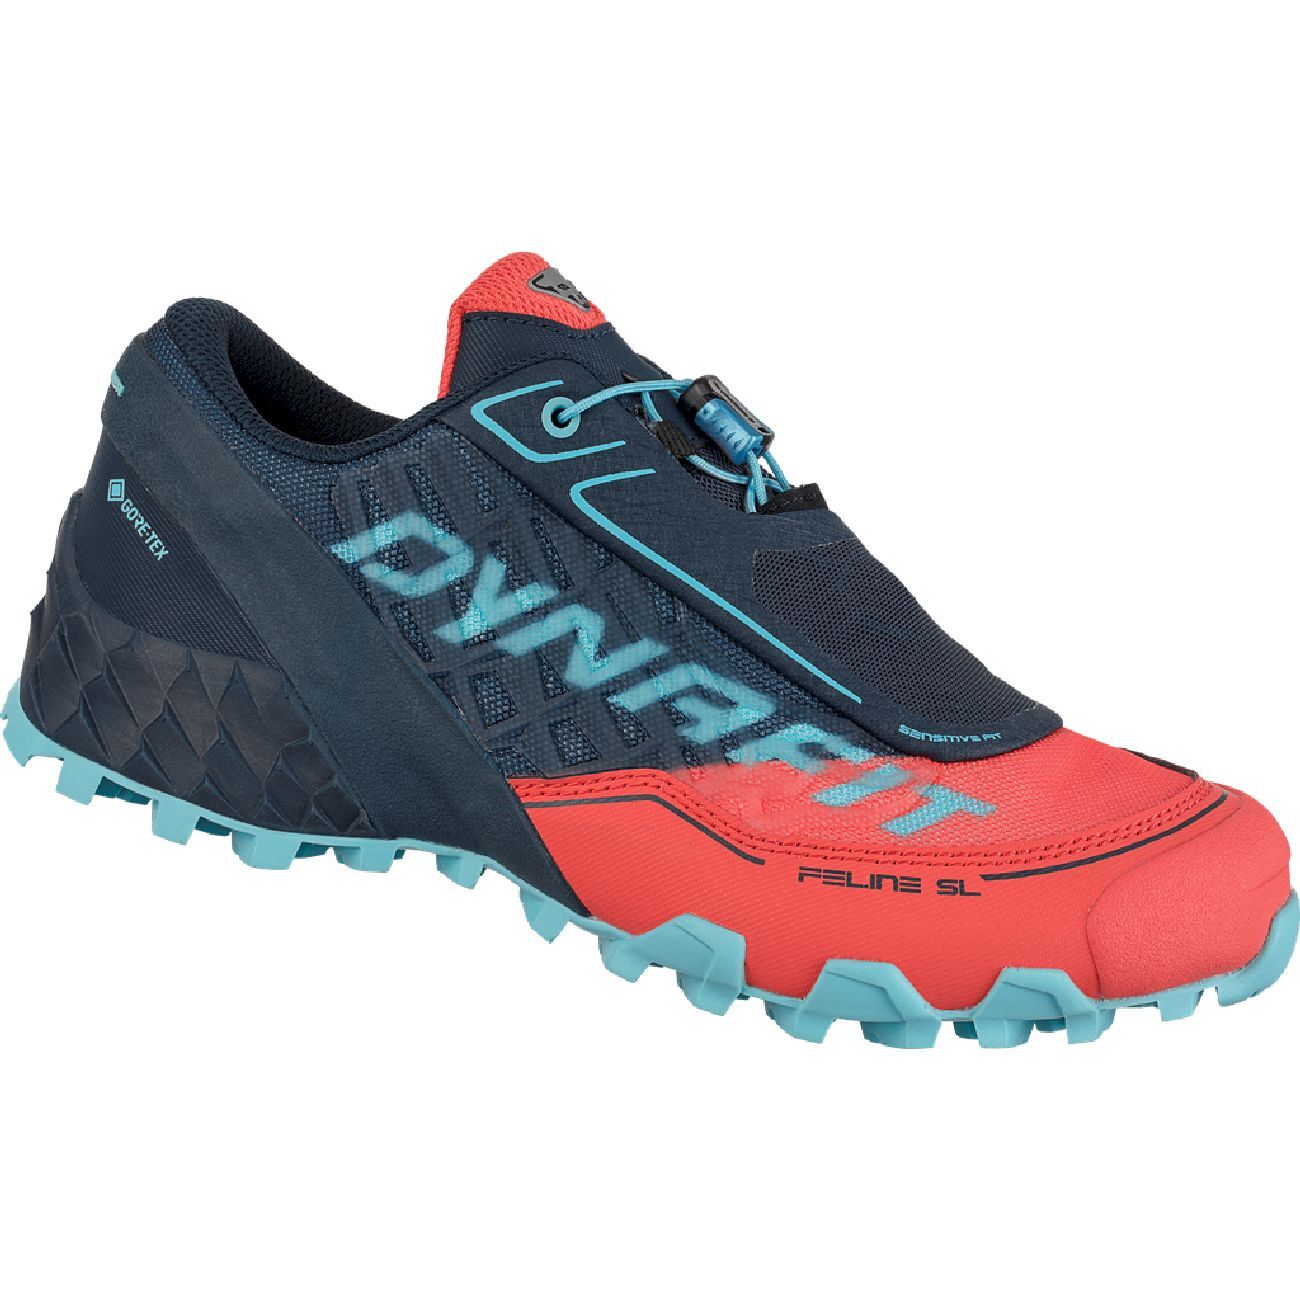 Dynafit Feline SL GTX - Trail running shoes - Women's